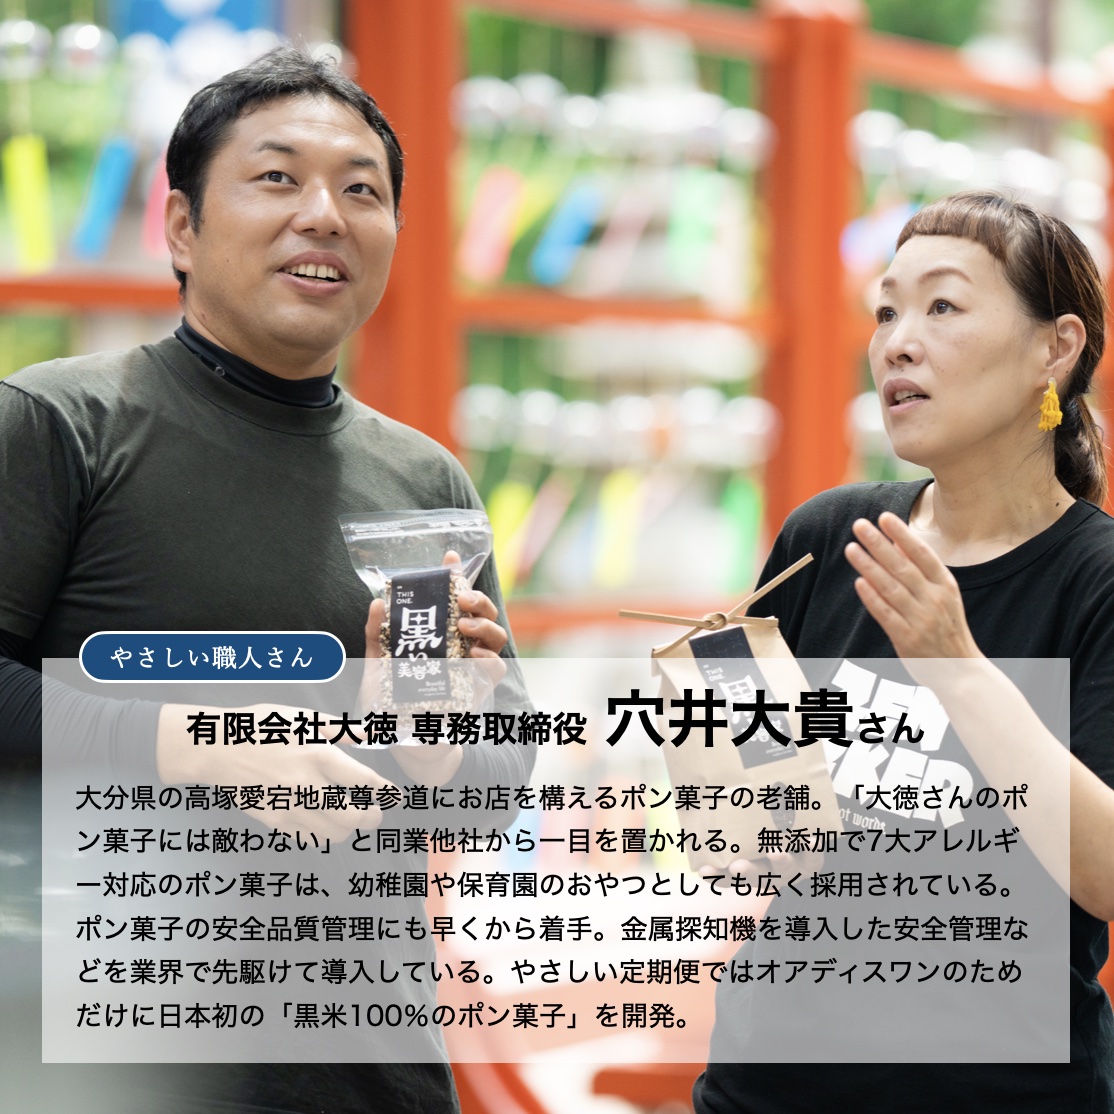 大分県にあるポン菓子の老舗代表の穴井さんと話すオアディスワンプロデューサー前田晴代のイメージ